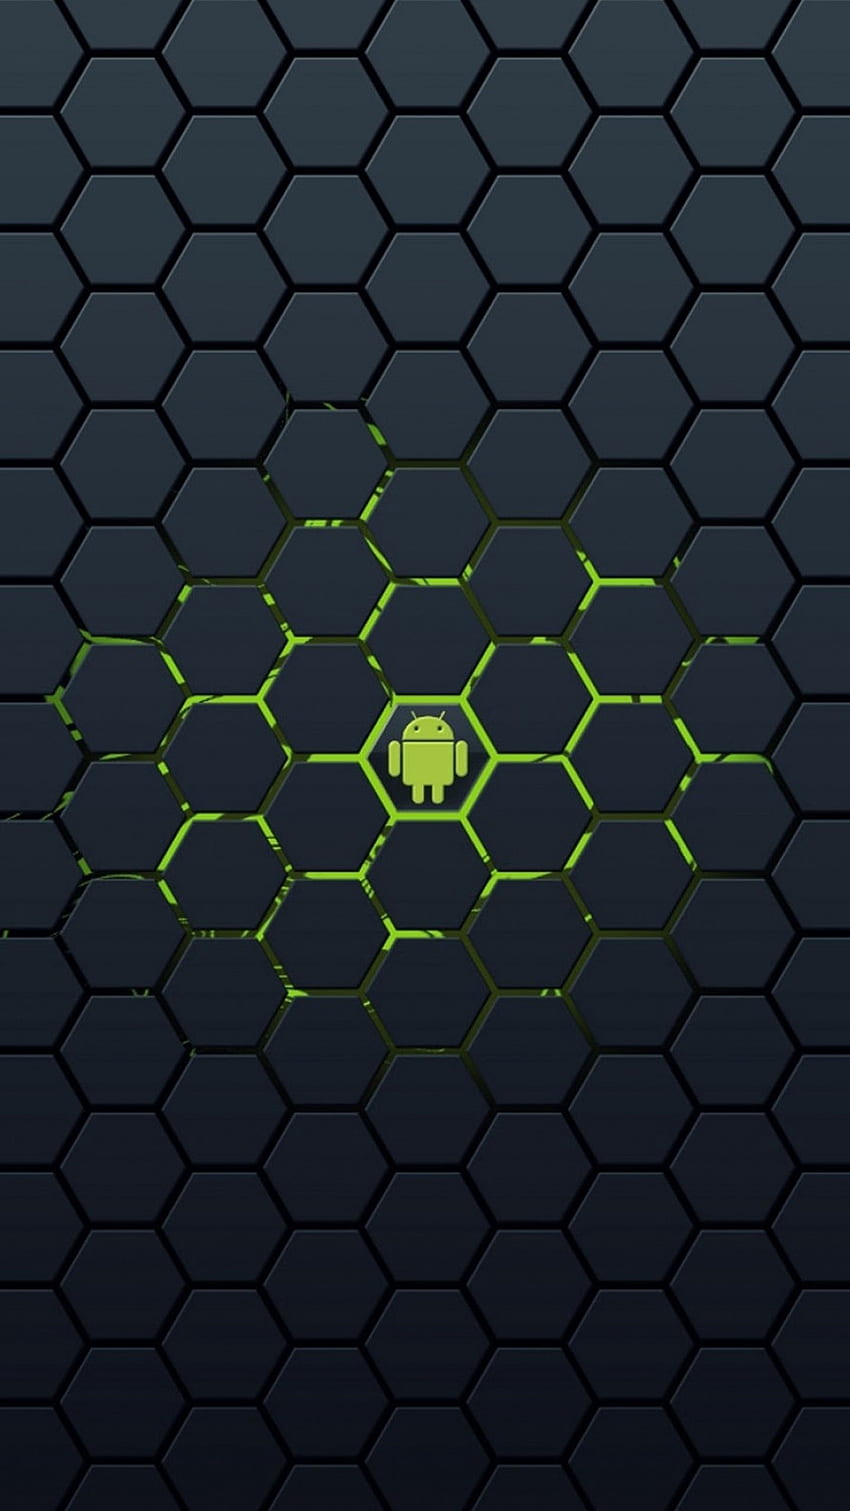 Blackberry Priv: Füllt das Raster Android HD-Handy-Hintergrundbild